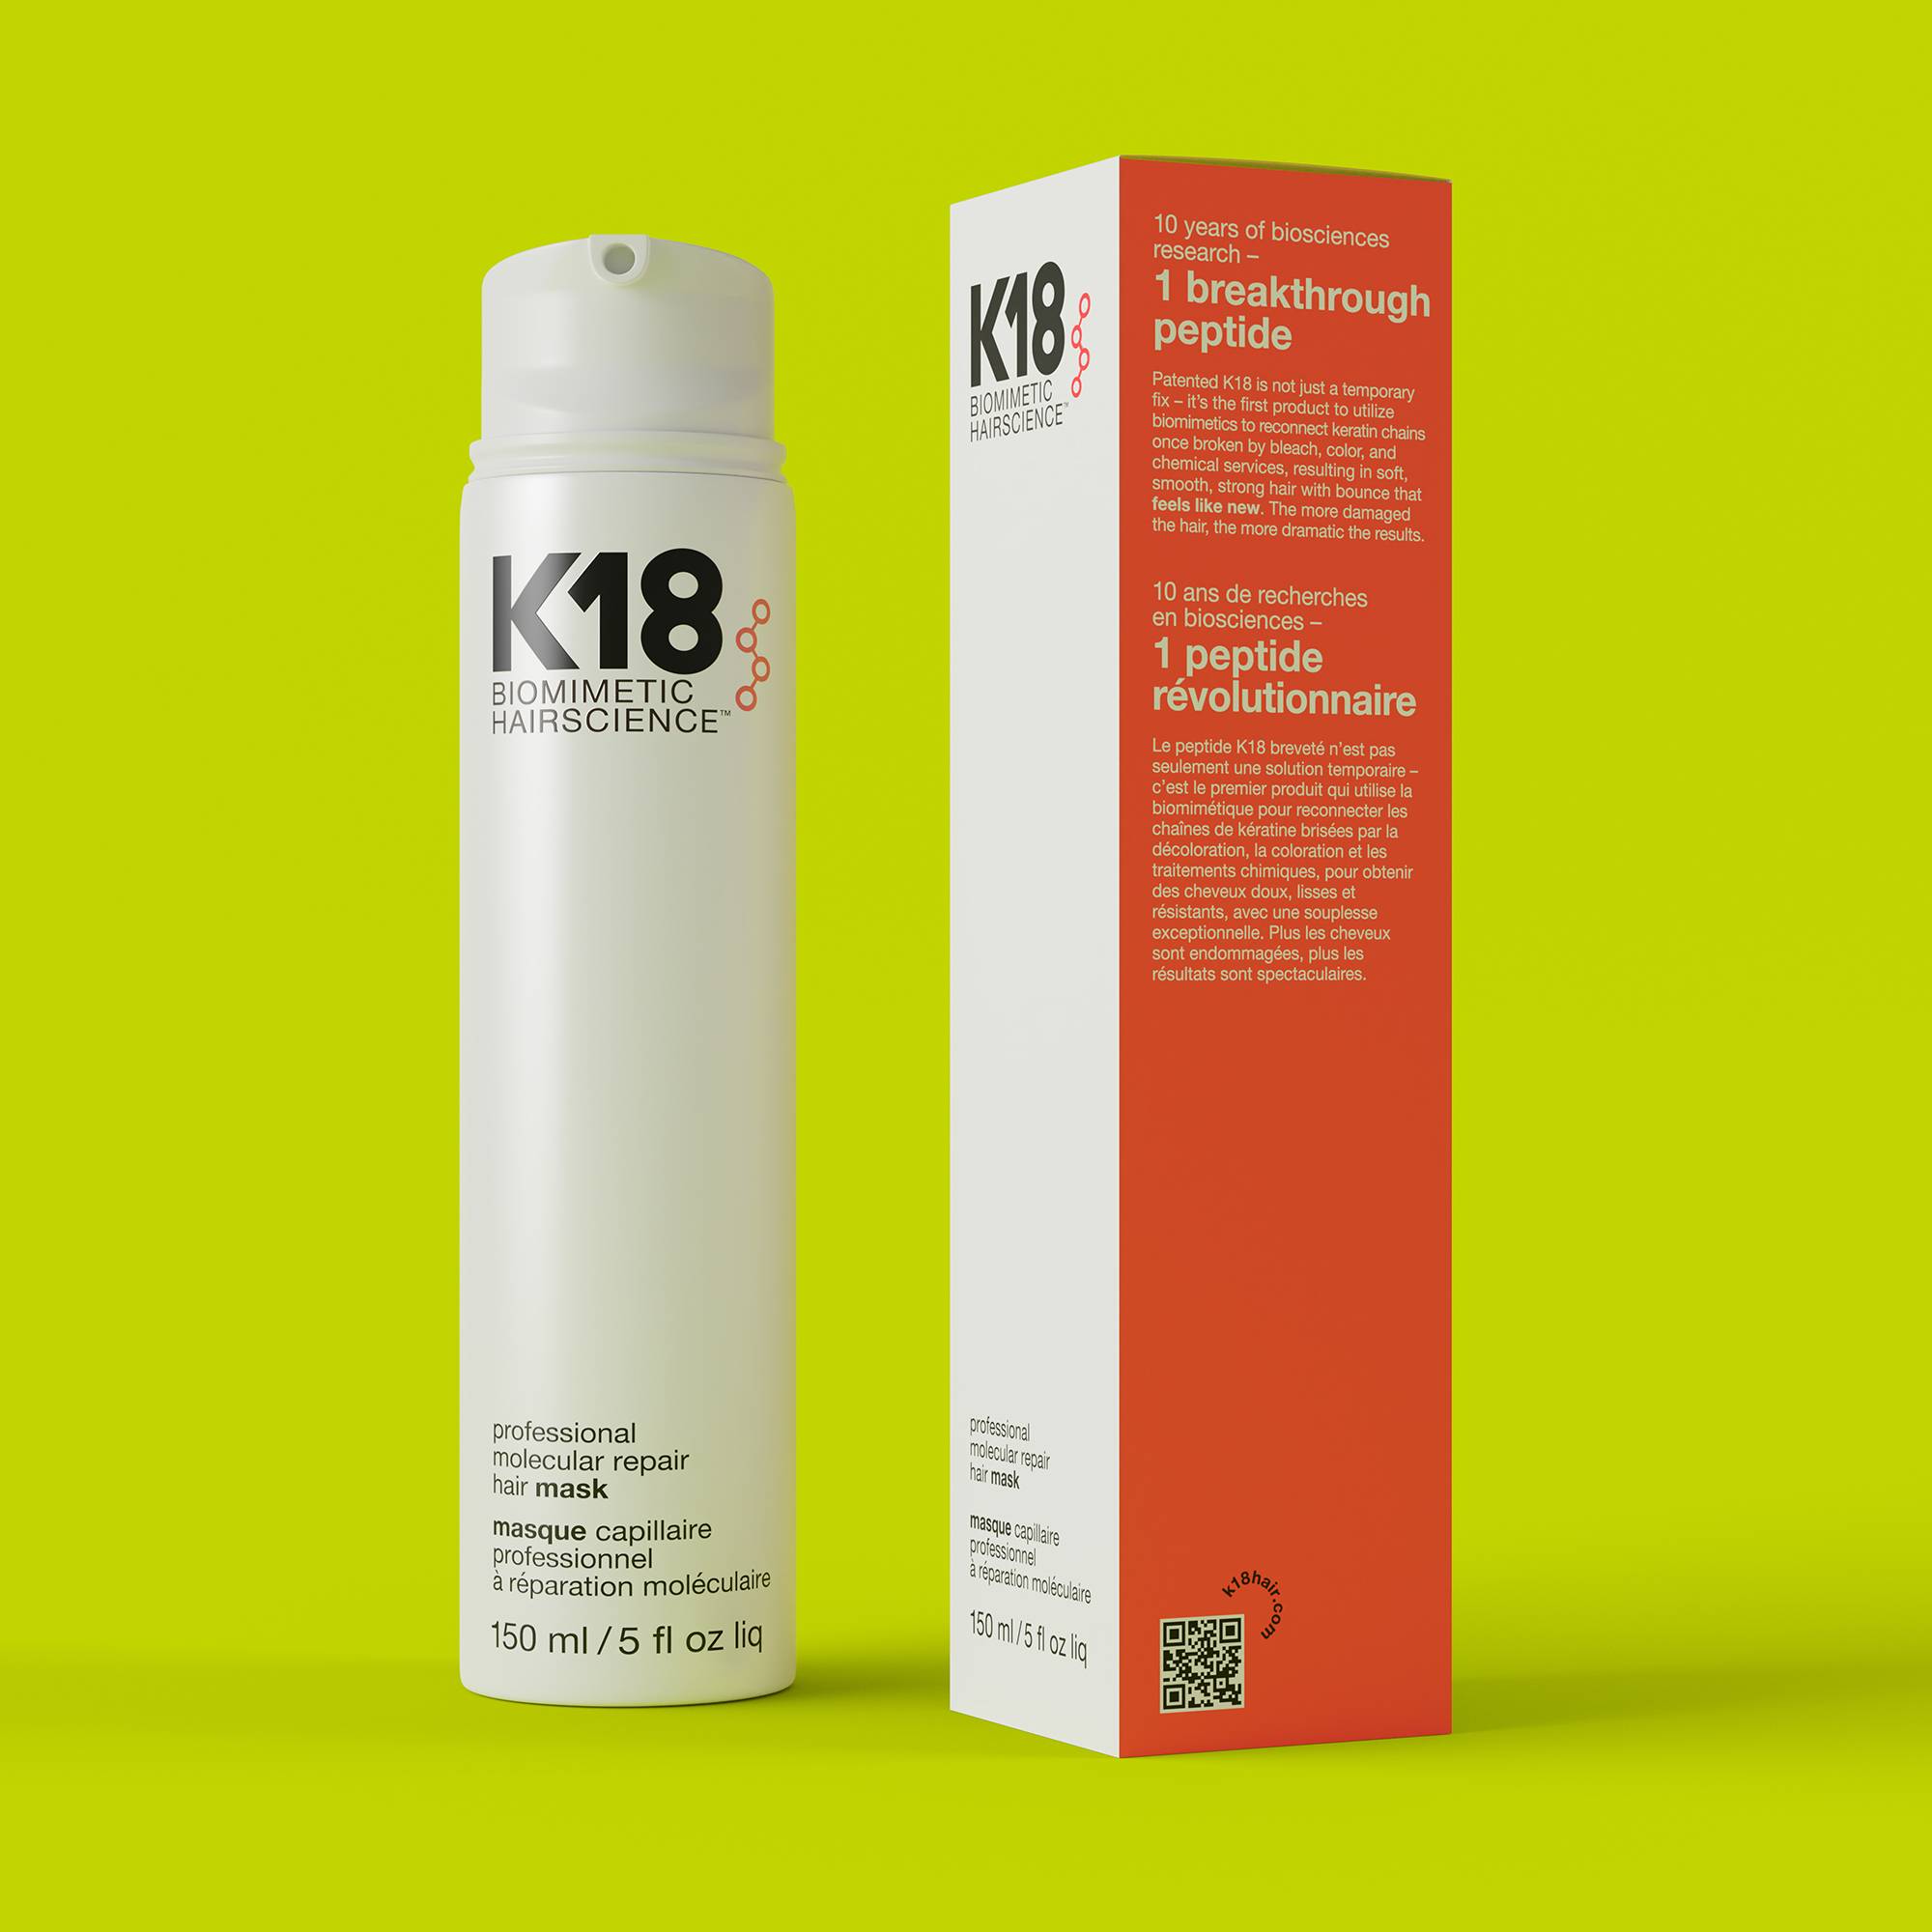 Masque professionnel réparation moléculaire Hair Mask de la marque K18 Biomimetic HairScience Contenance 150ml - 4